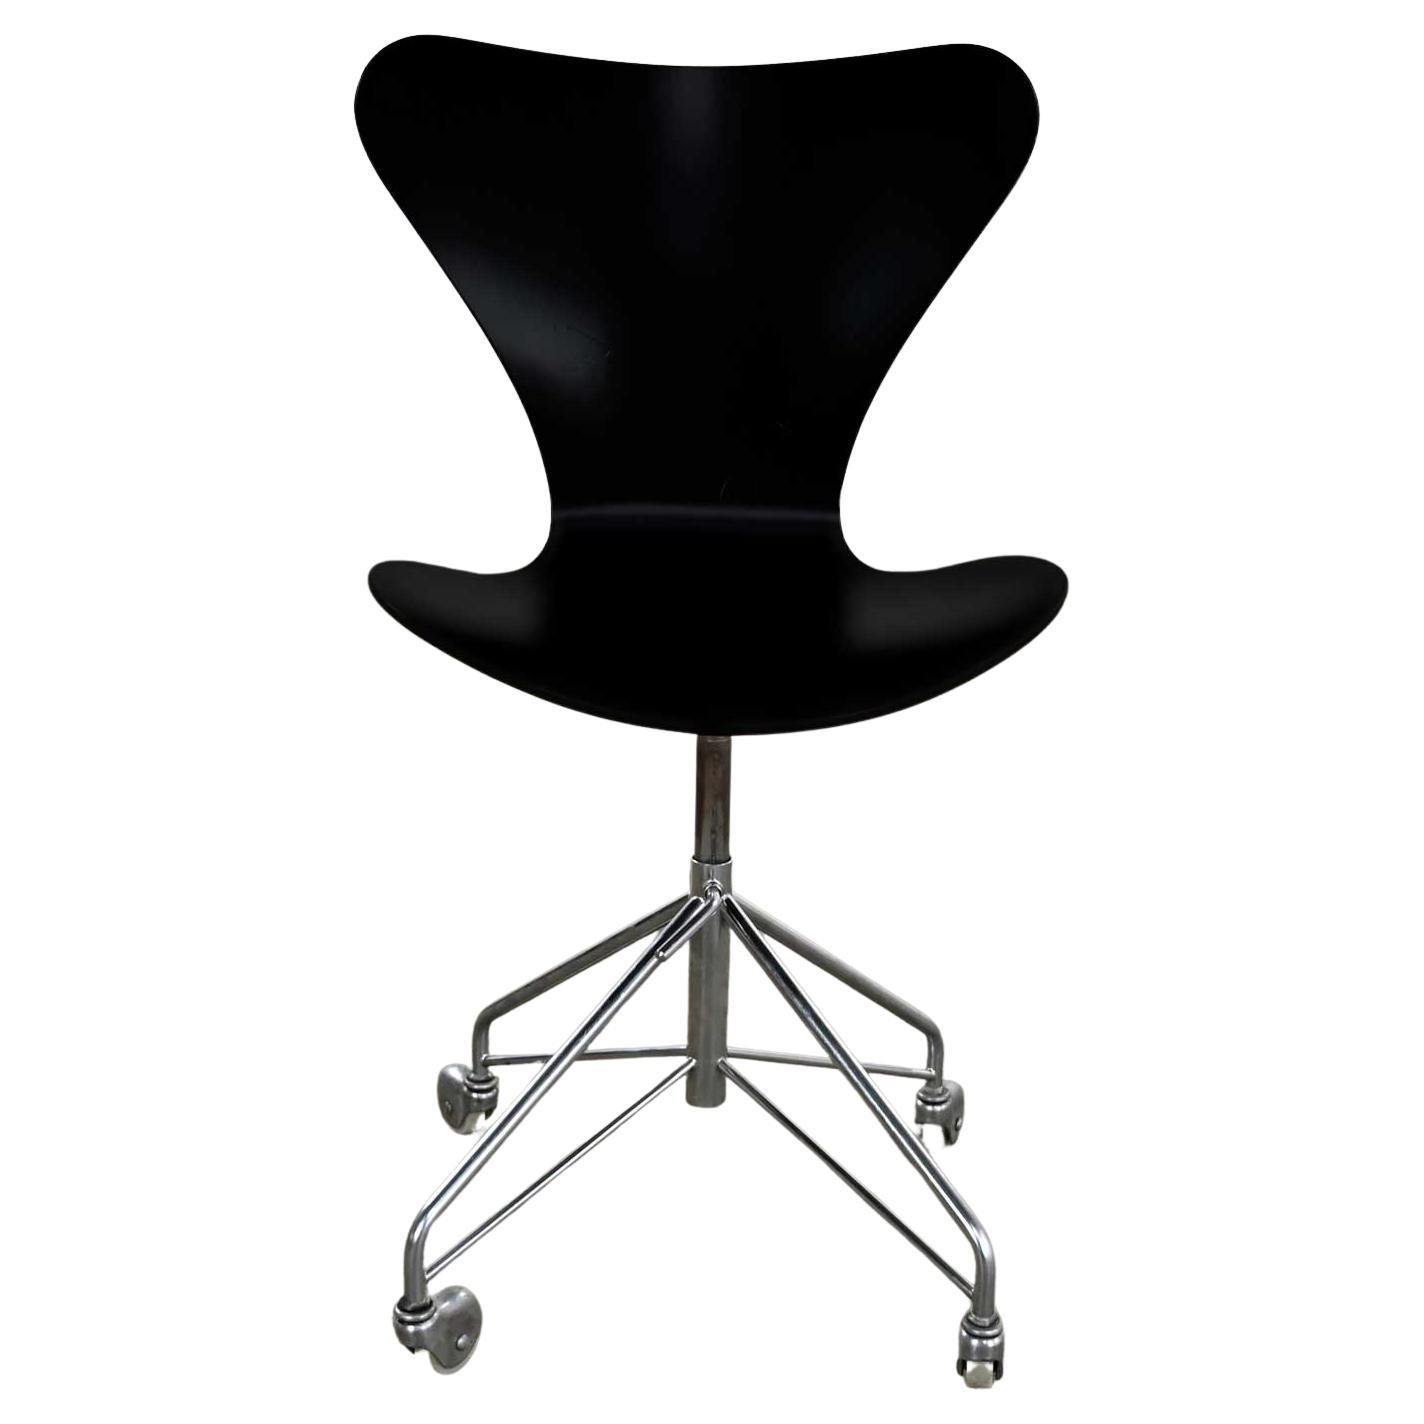 Chaise de bureau moderne scandinave Arne Jacobsen Series 7 noire et chromée de Fritz Hansen